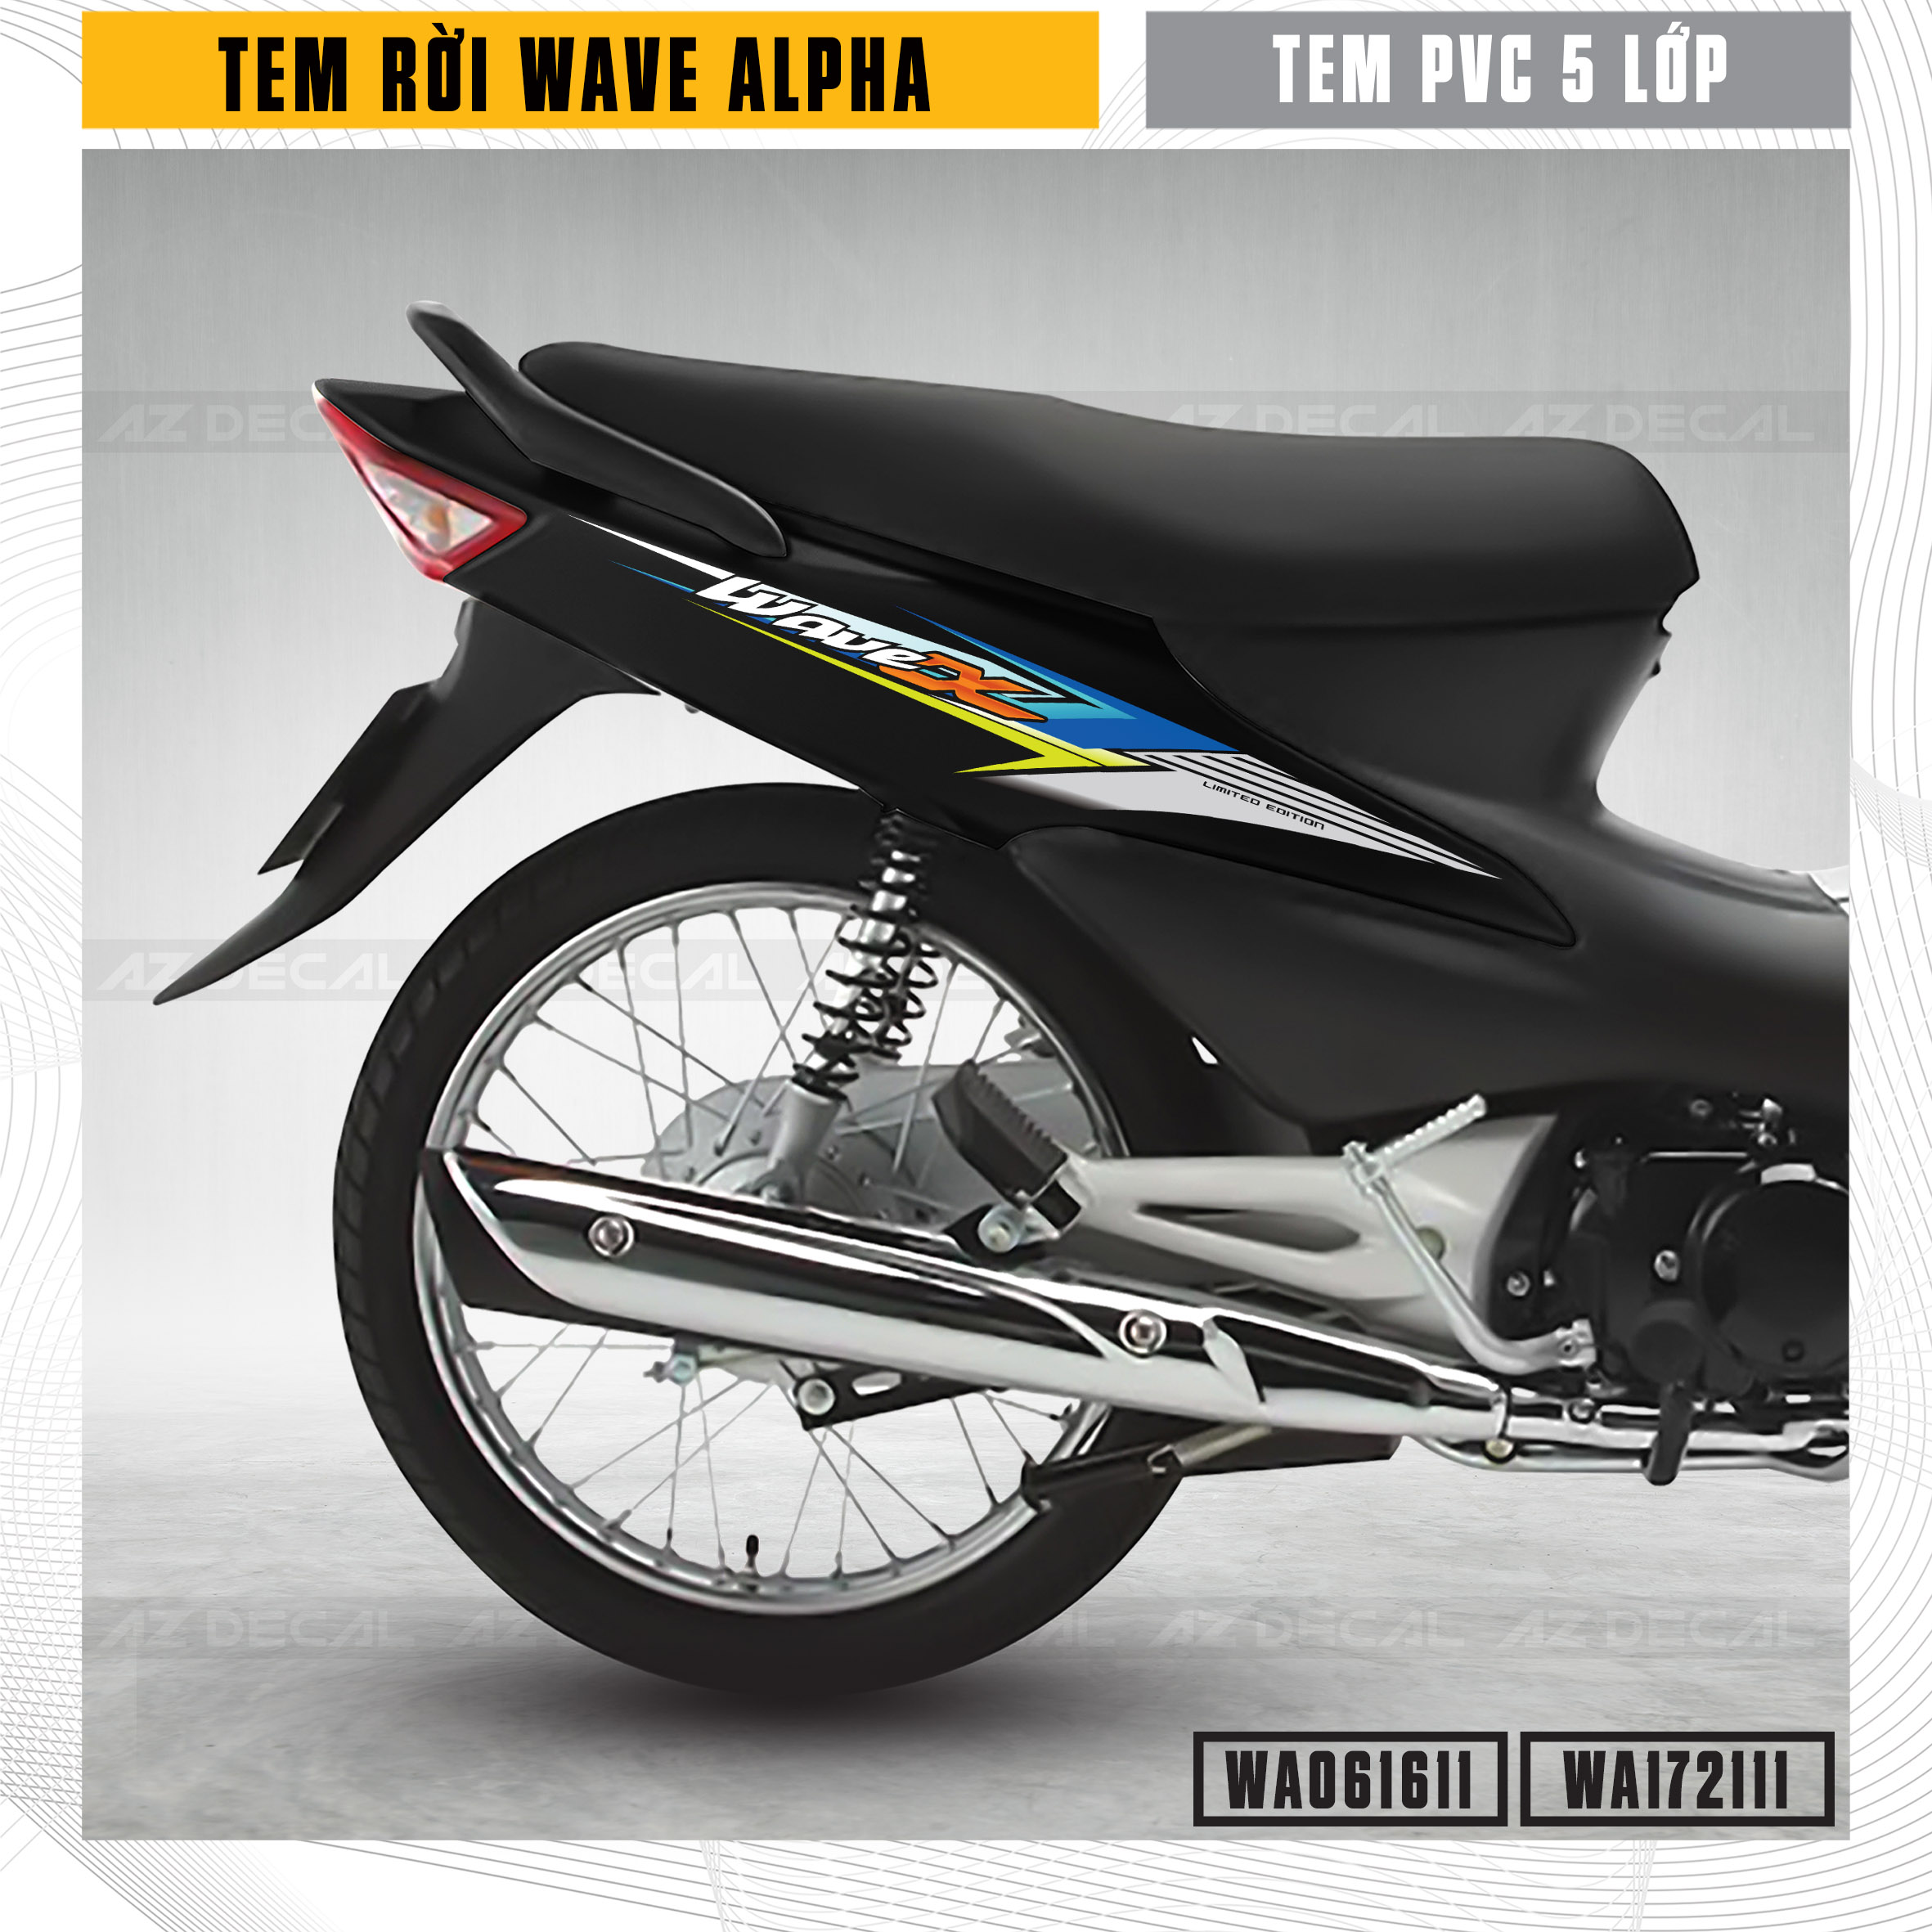 Điểm lại 16 năm dòng xe Honda Wave Alpha ở Việt nam